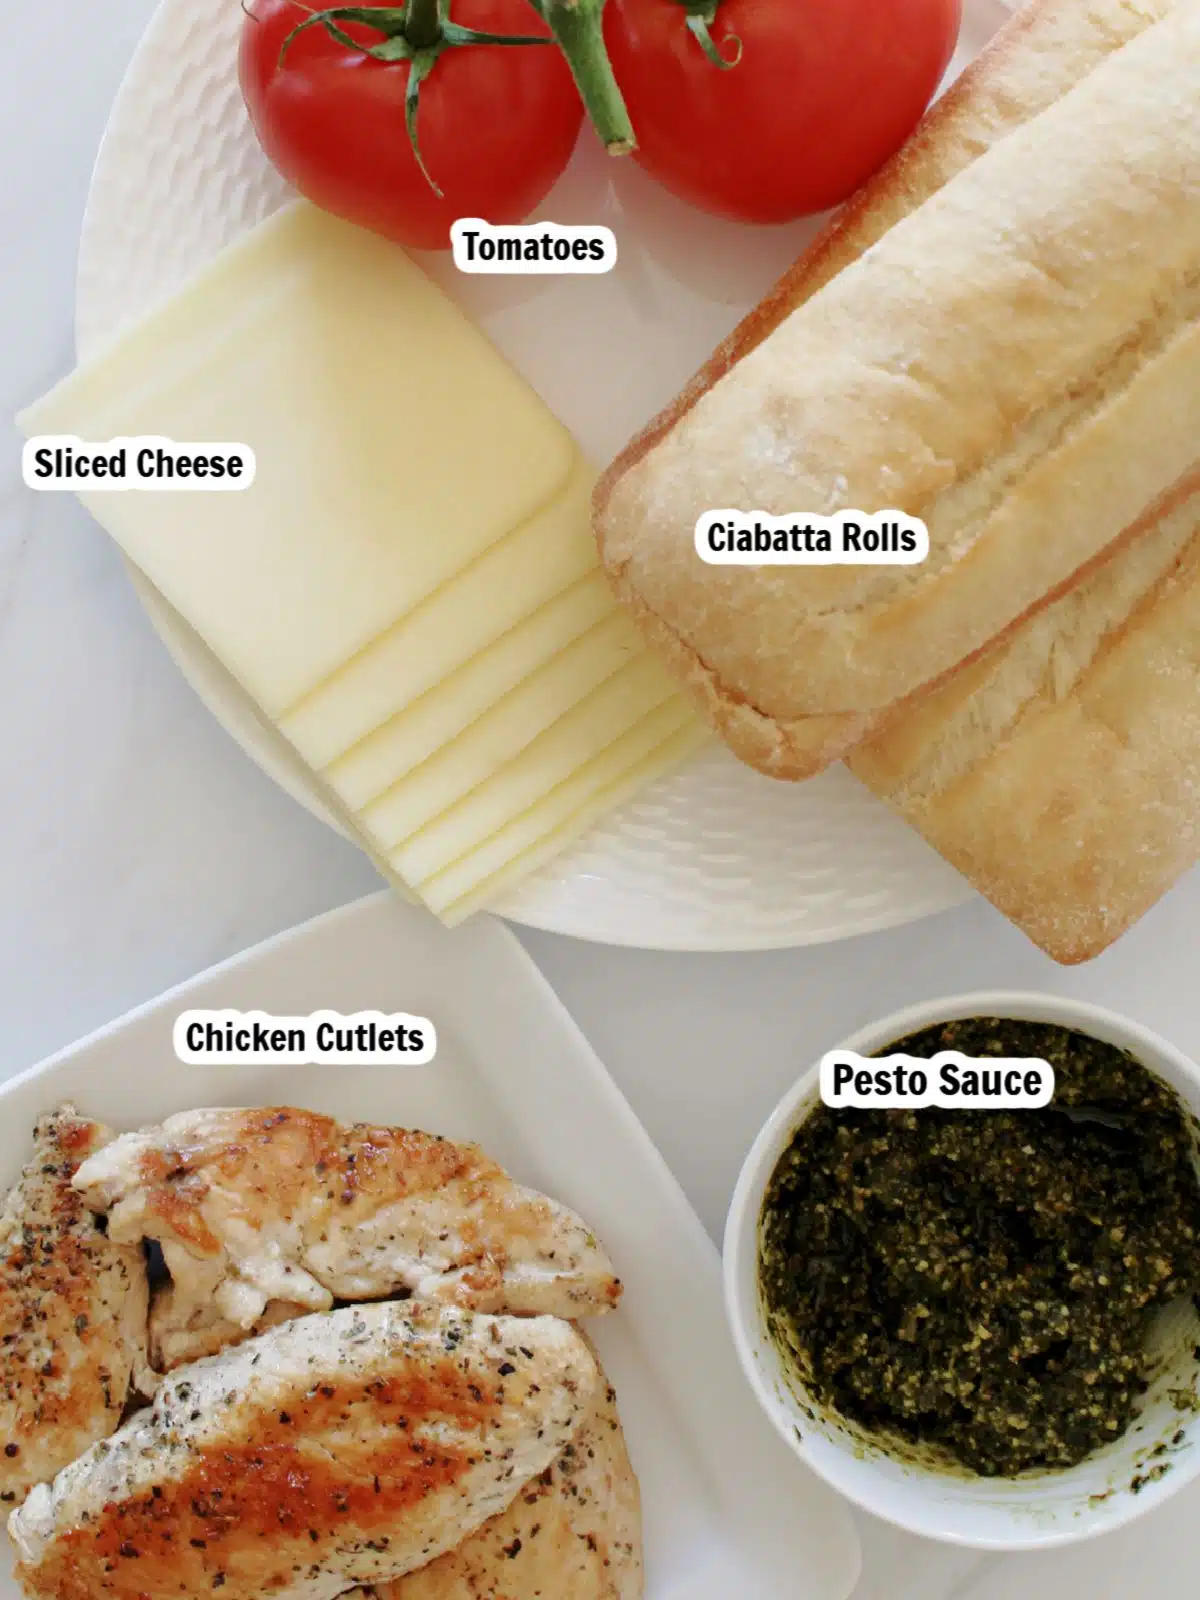 Ingredients to make a chicken cutlet sandwich